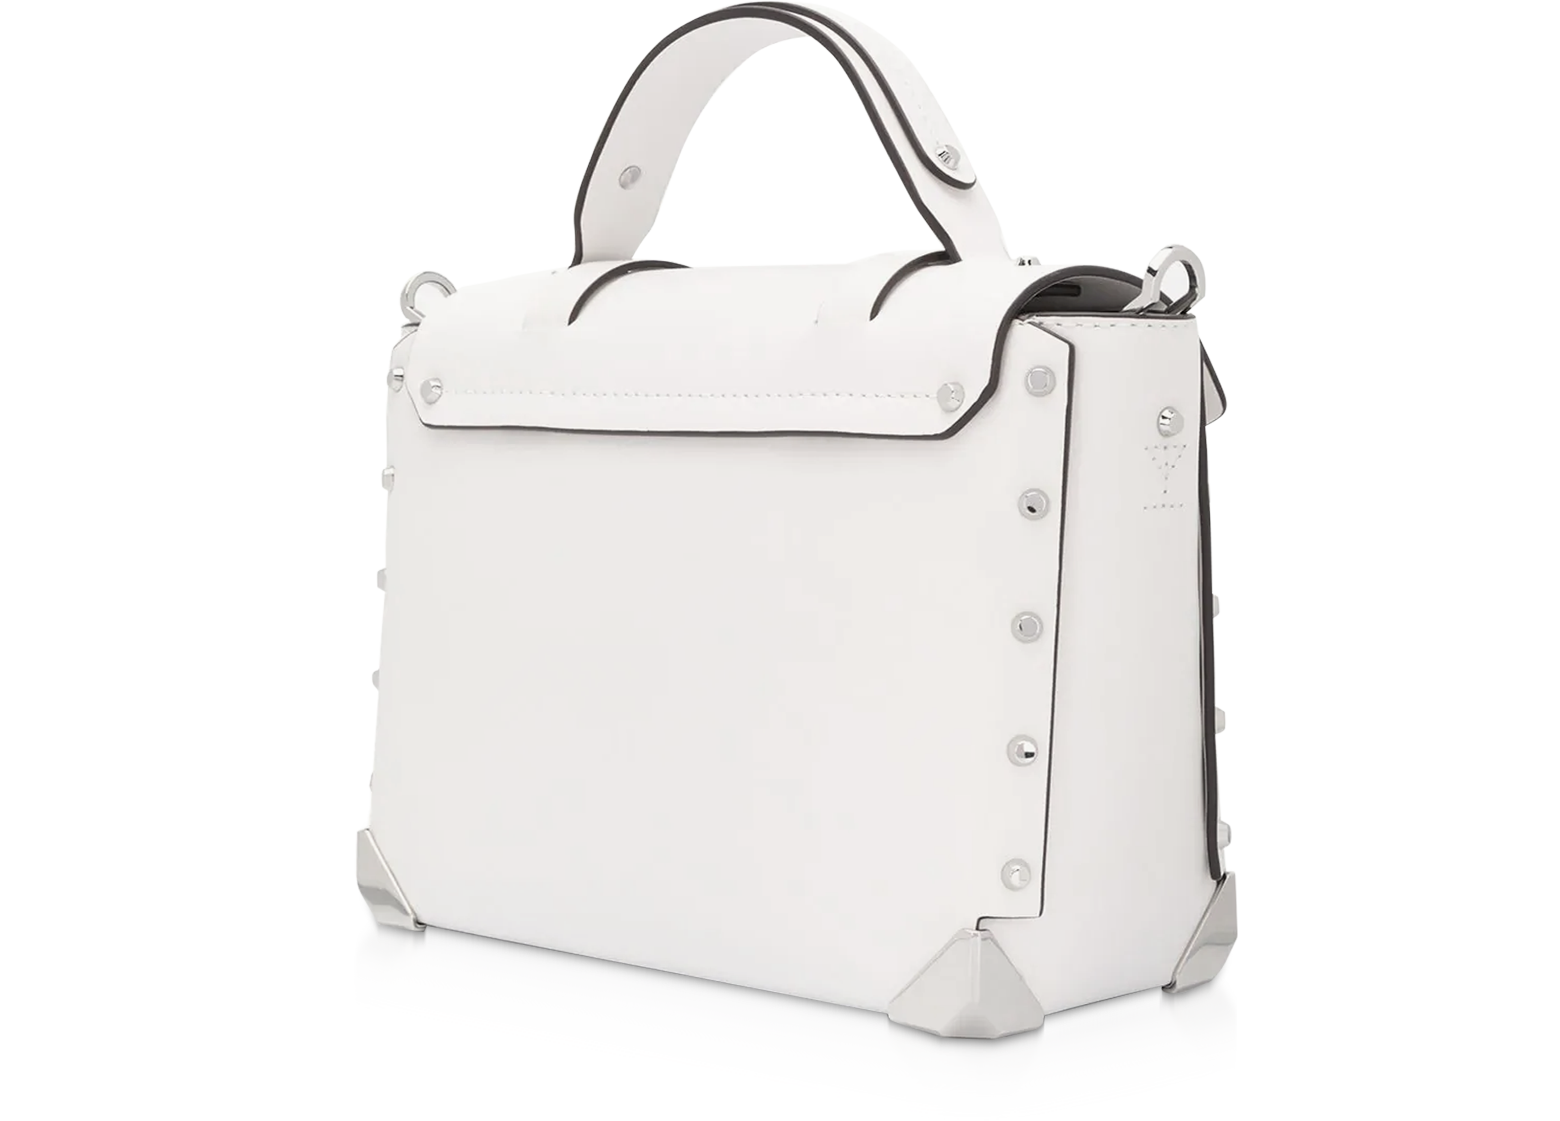 Michael Kors and the £300 It bag, Handbags